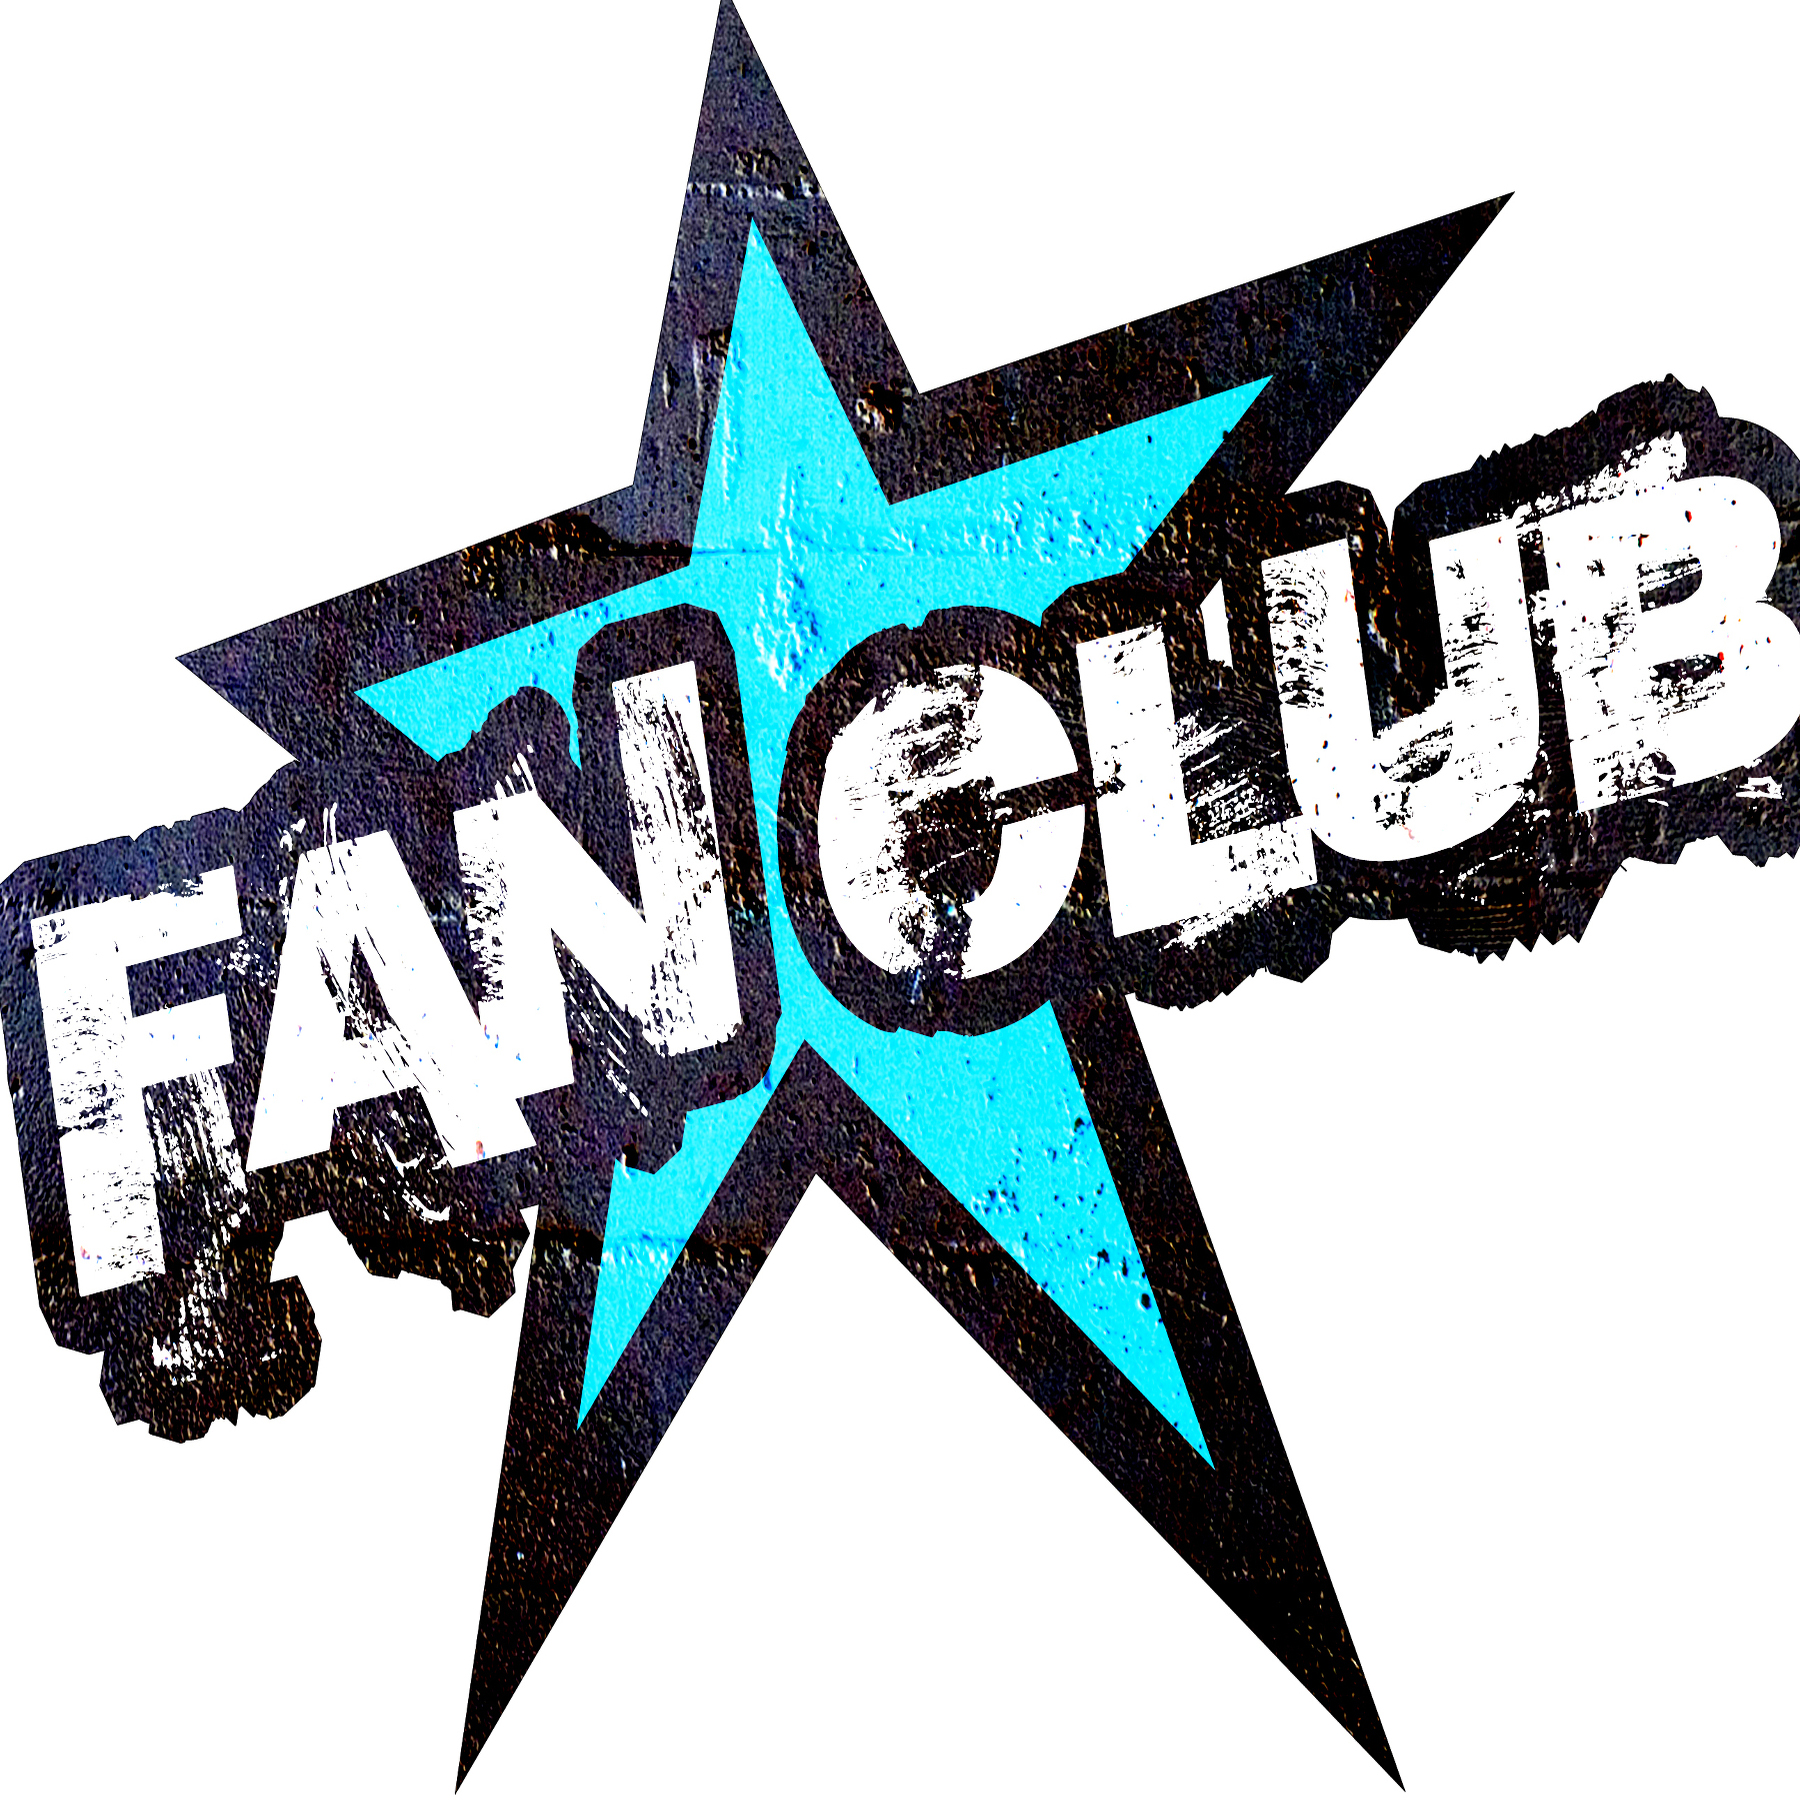 fanclub